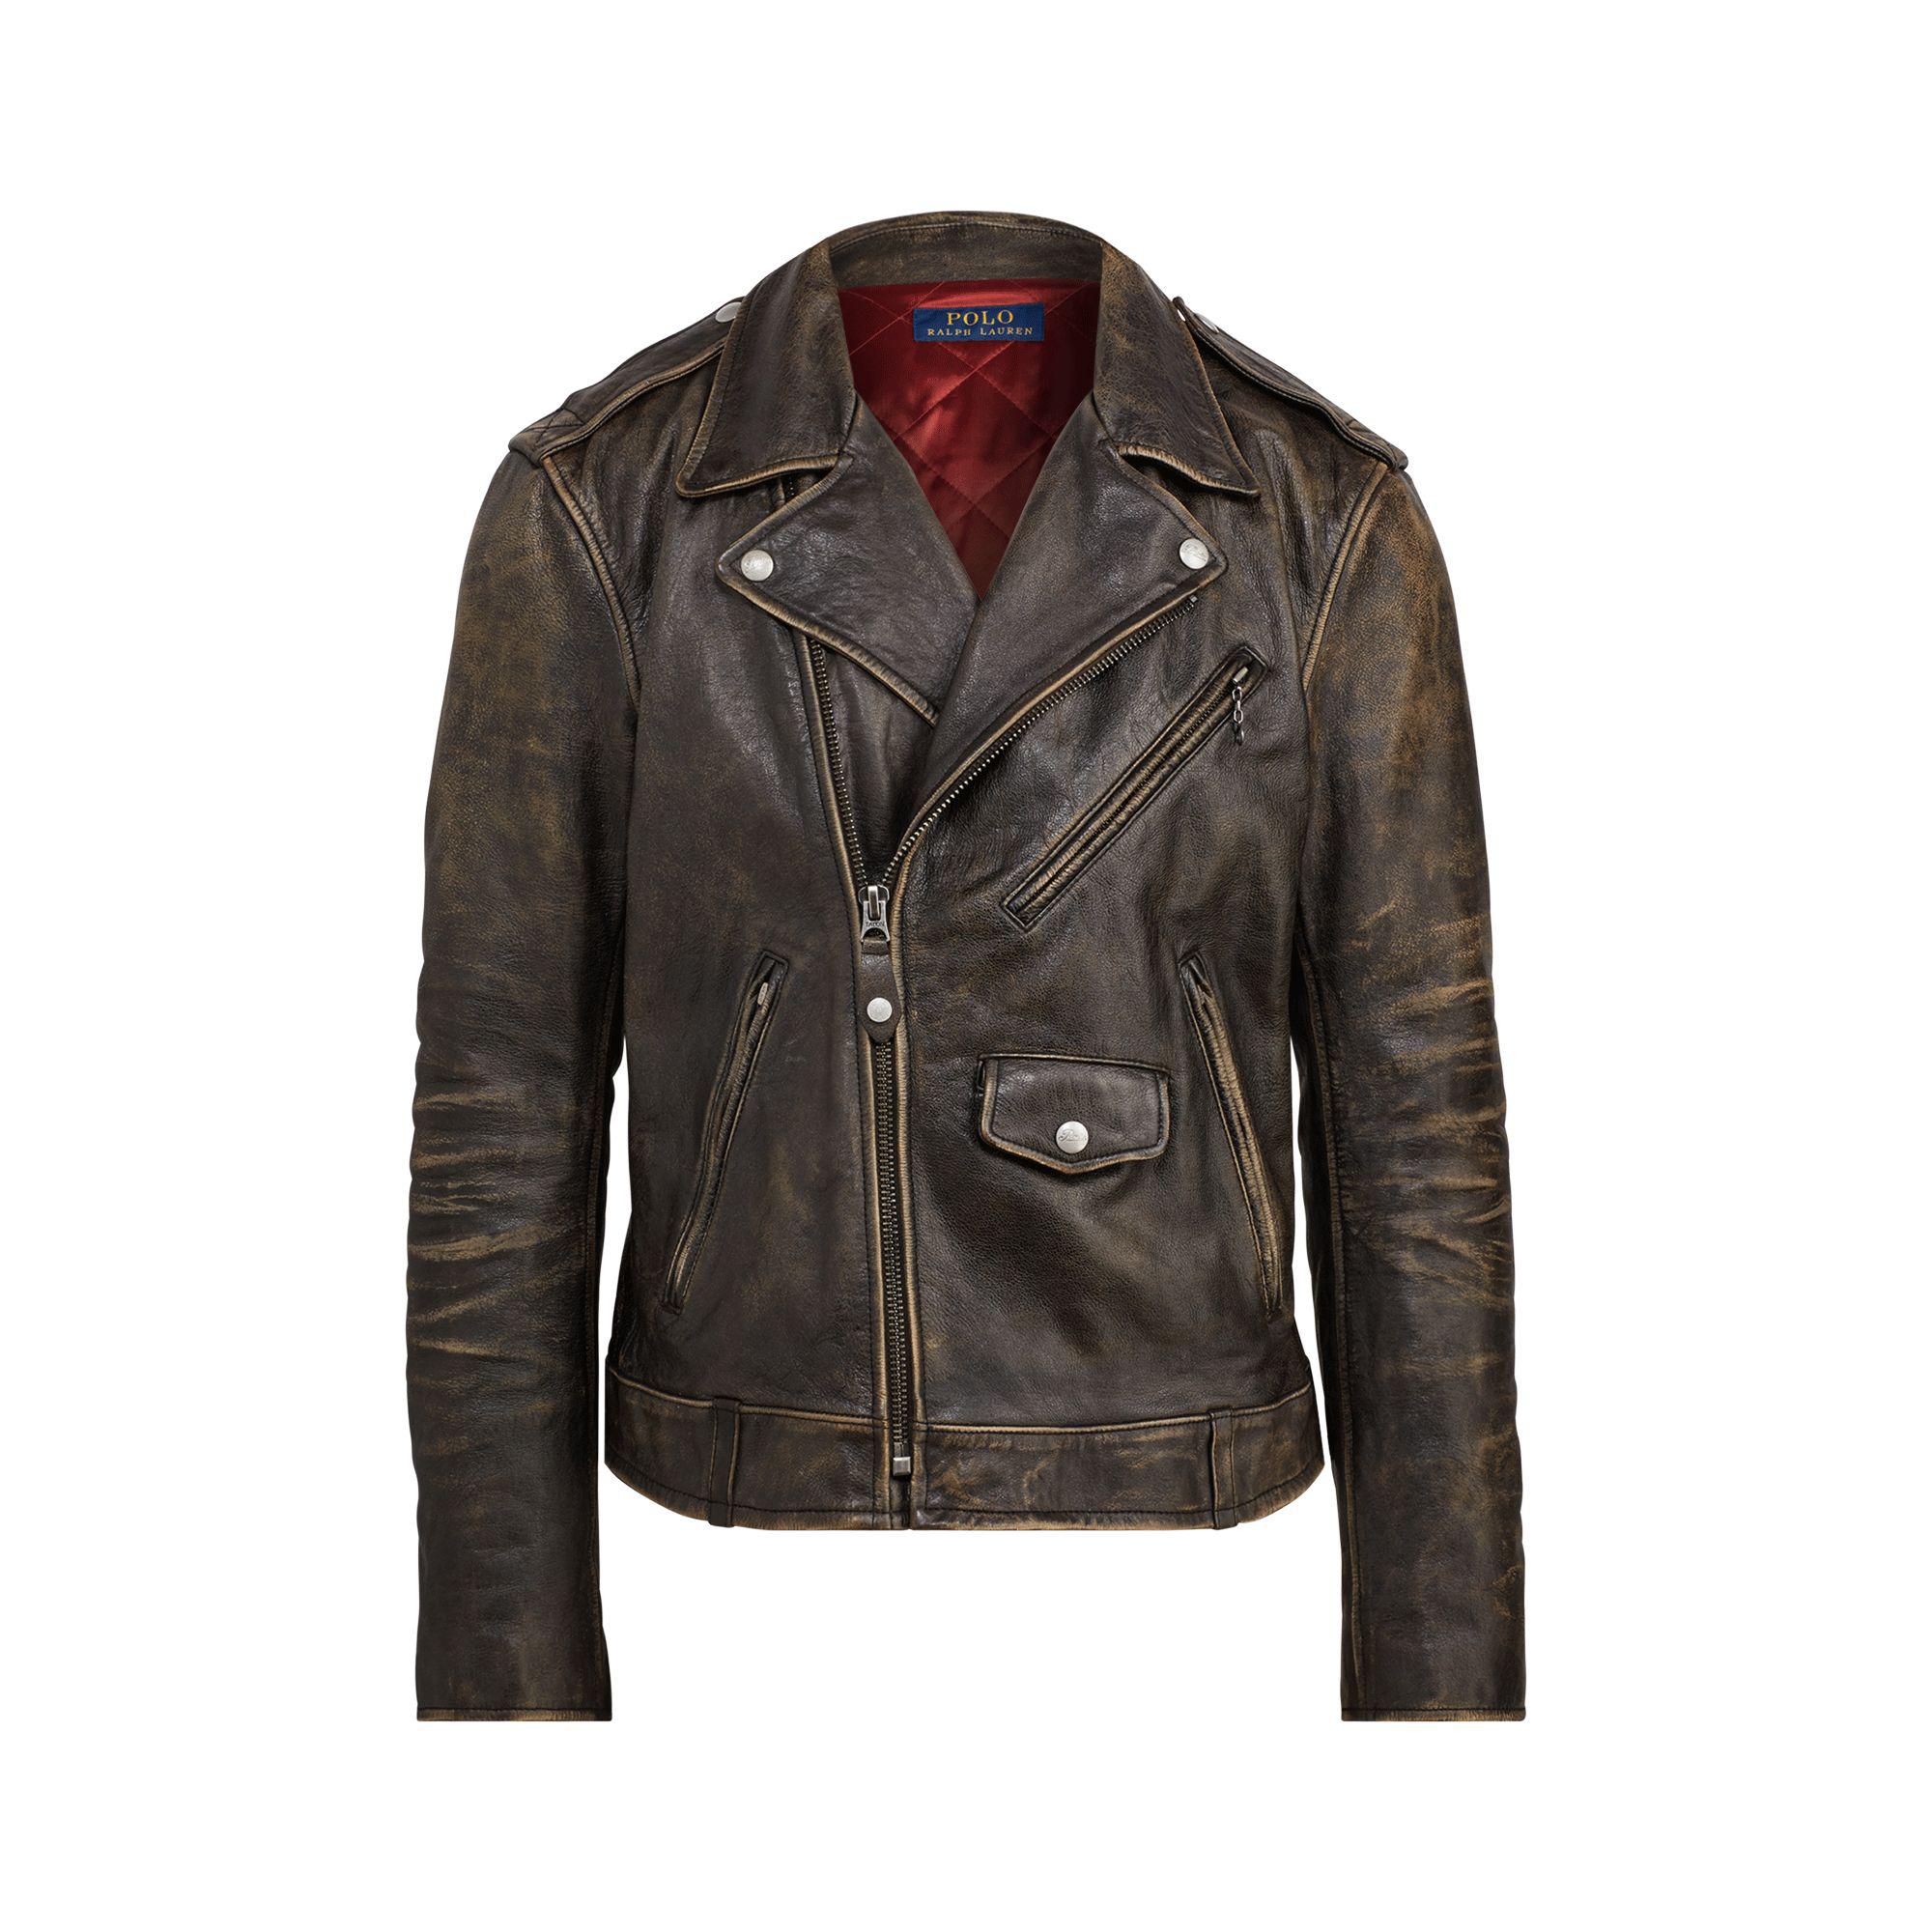 Aprender acerca 88+ imagen polo ralph lauren leather moto jacket ...